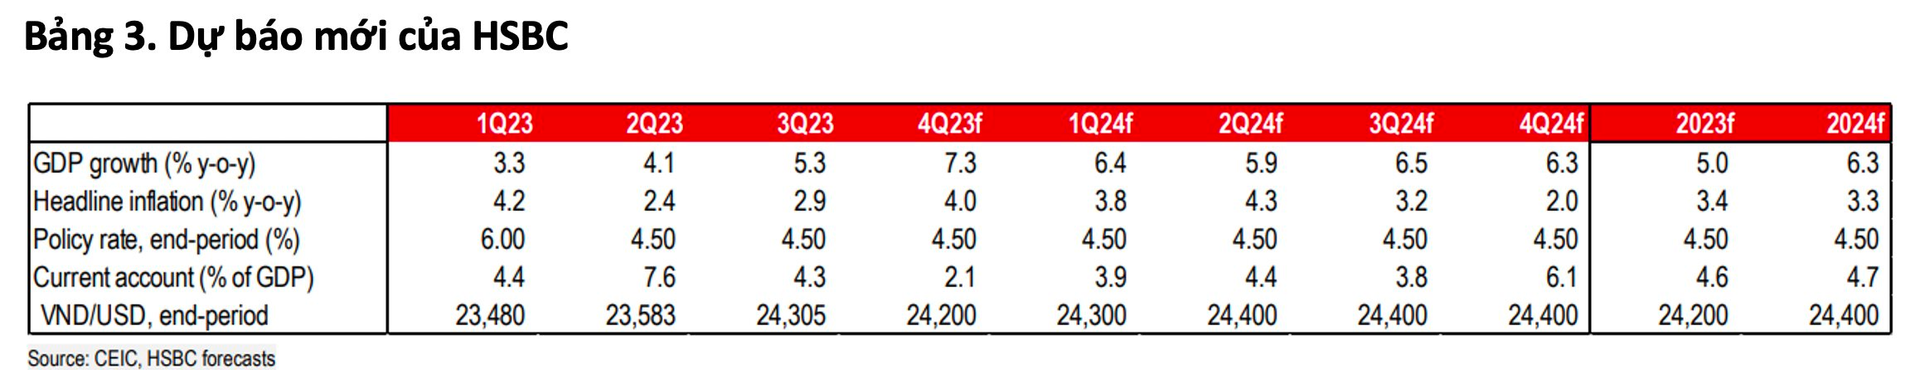 HSBC: Việt Nam chỉ đứng sau Malaysia trong hút FDI tại khu vực, có thể tiến lên trong chuỗi giá trị - Ảnh 4.